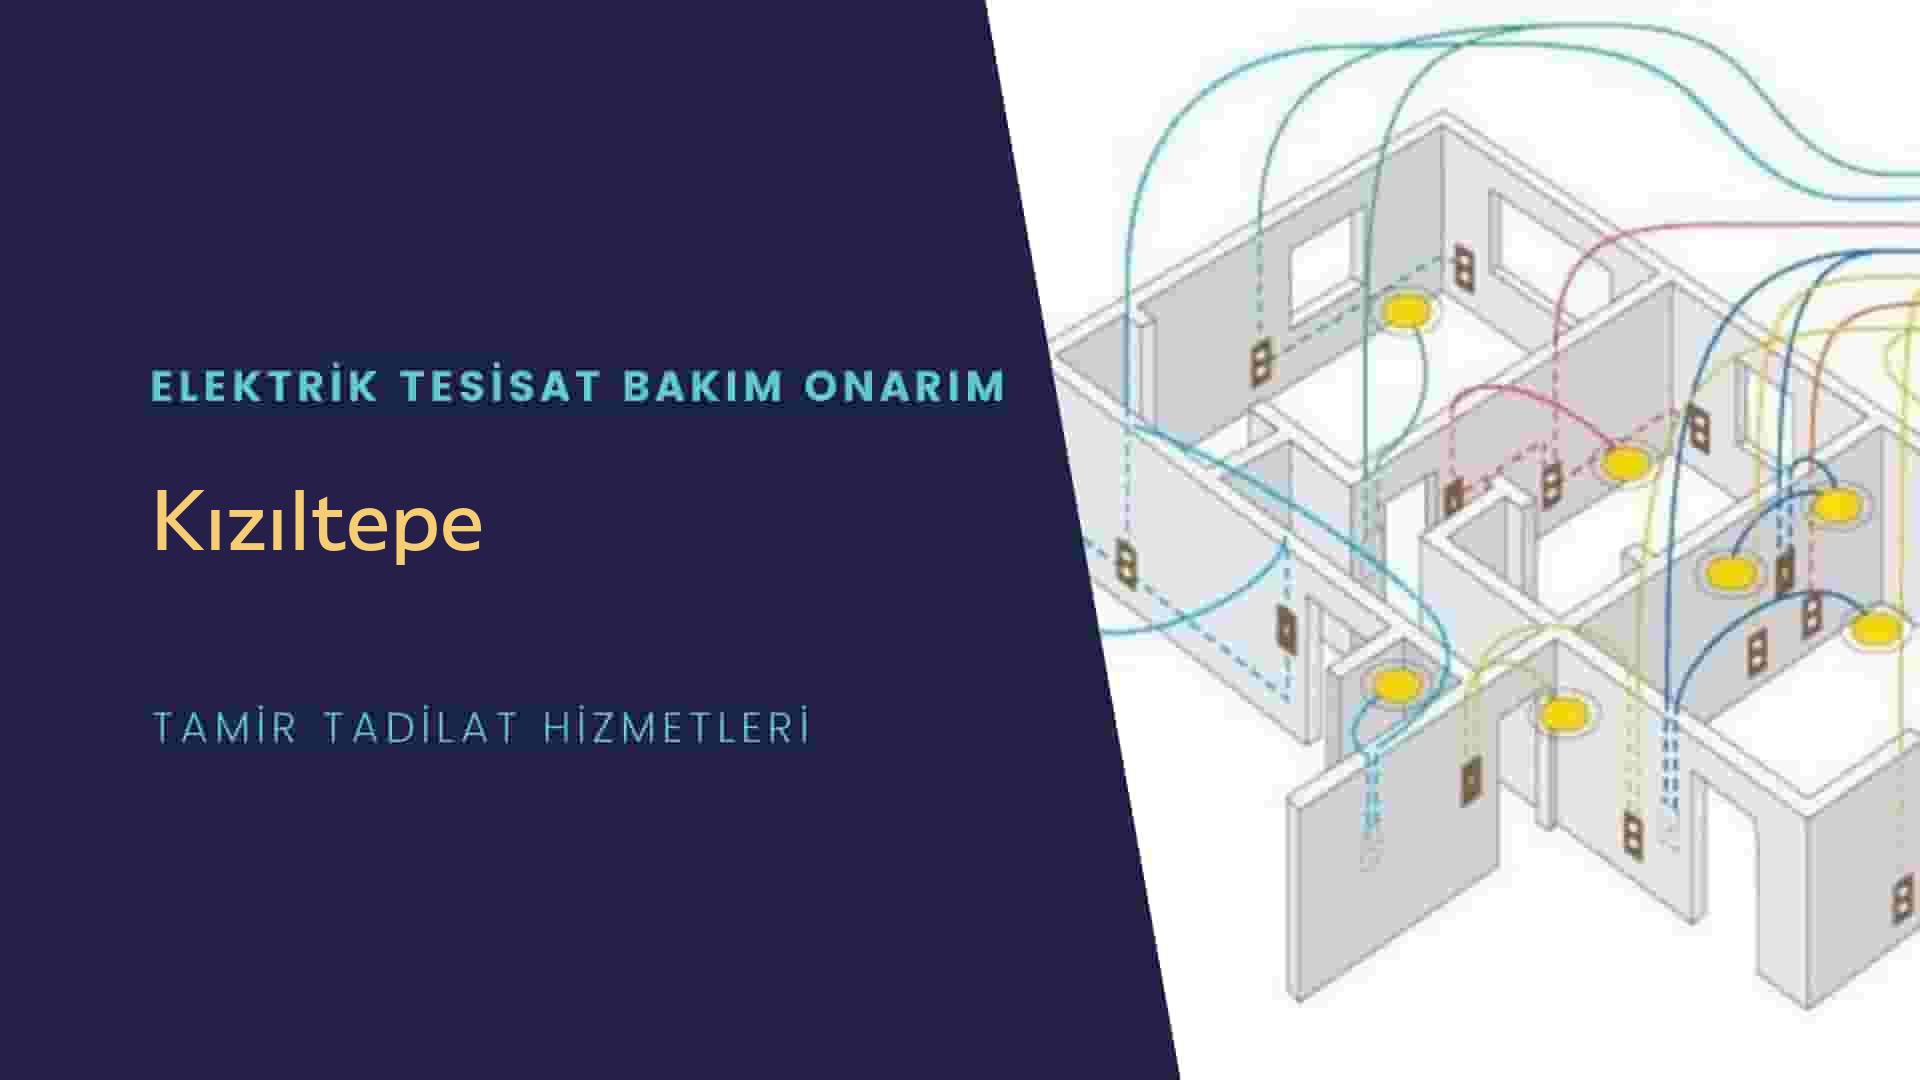 Kızıltepe'de elektrik tesisatı ustalarımı arıyorsunuz doğru adrestenizi Kızıltepe elektrik tesisatı ustalarımız 7/24 sizlere hizmet vermekten mutluluk duyar.